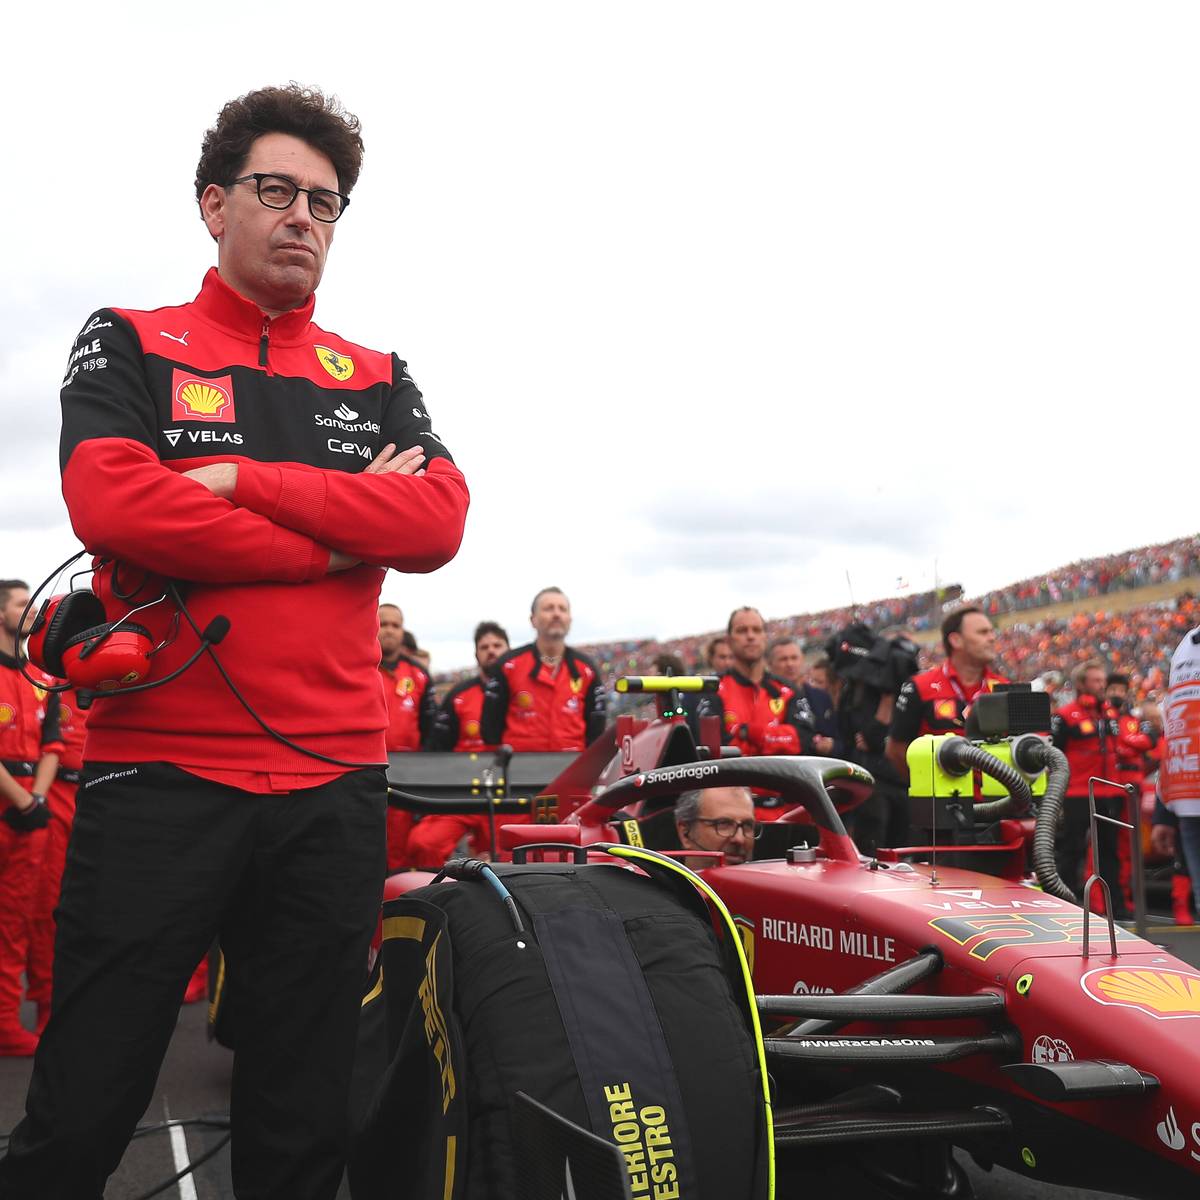 Die FIA will Maßnahmen gegen das Porpoising durchdrücken. Vor allem Ferrari wehrt sich jedoch gegen diese Pläne. Mattia Binotto kündigt starken Widerstand an.